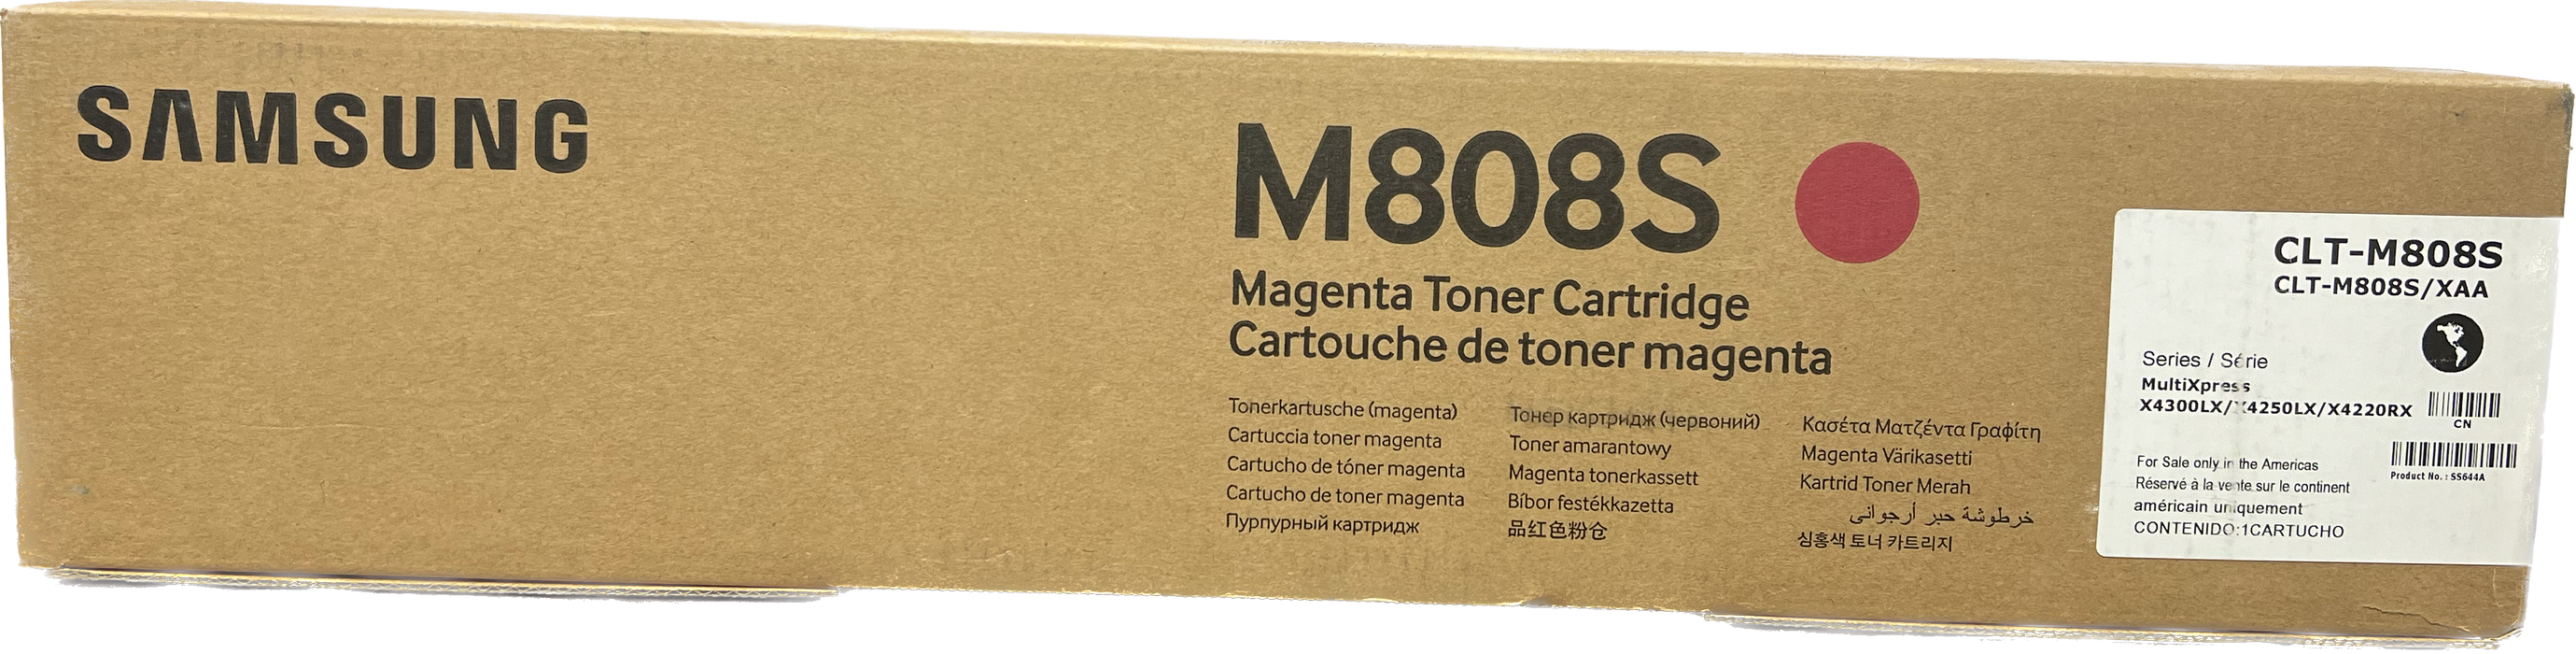 Genuine Samsung Magenta Toner Cartridge | CLT-M808S | SS644A